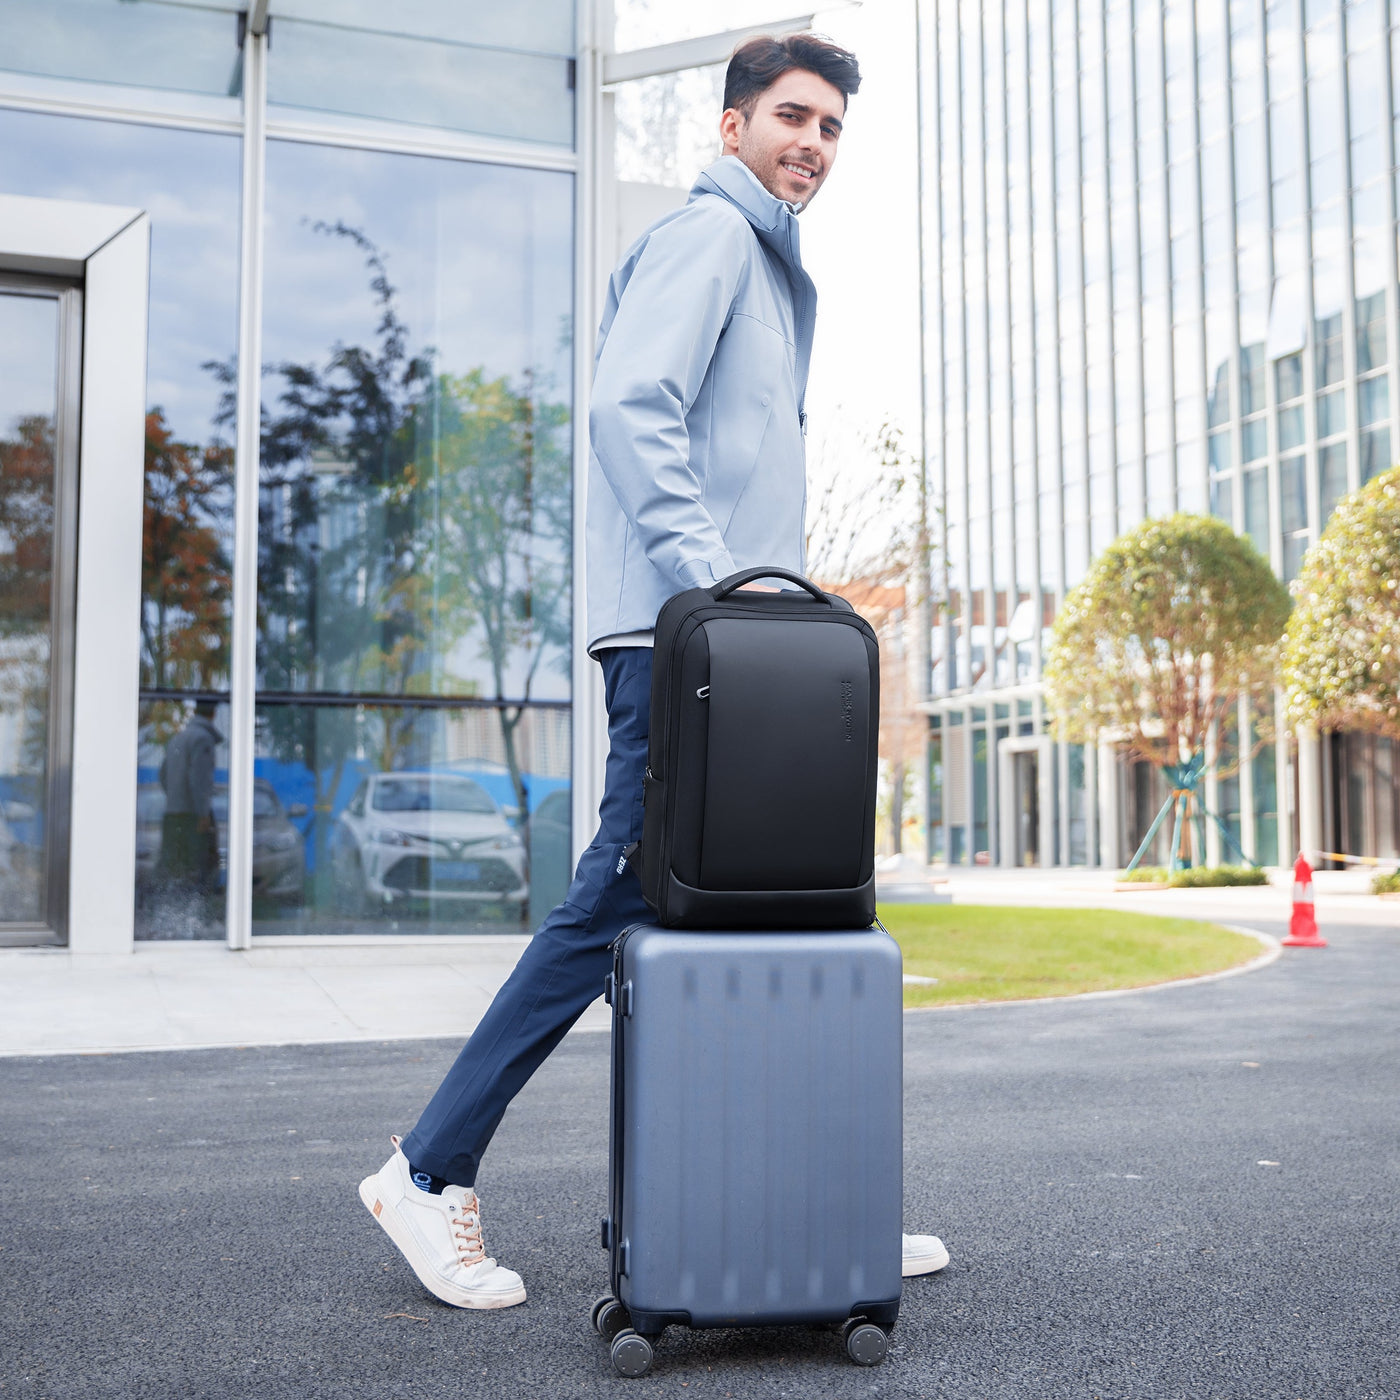 Mark Ryden Navigator Business and travel laptop backpack